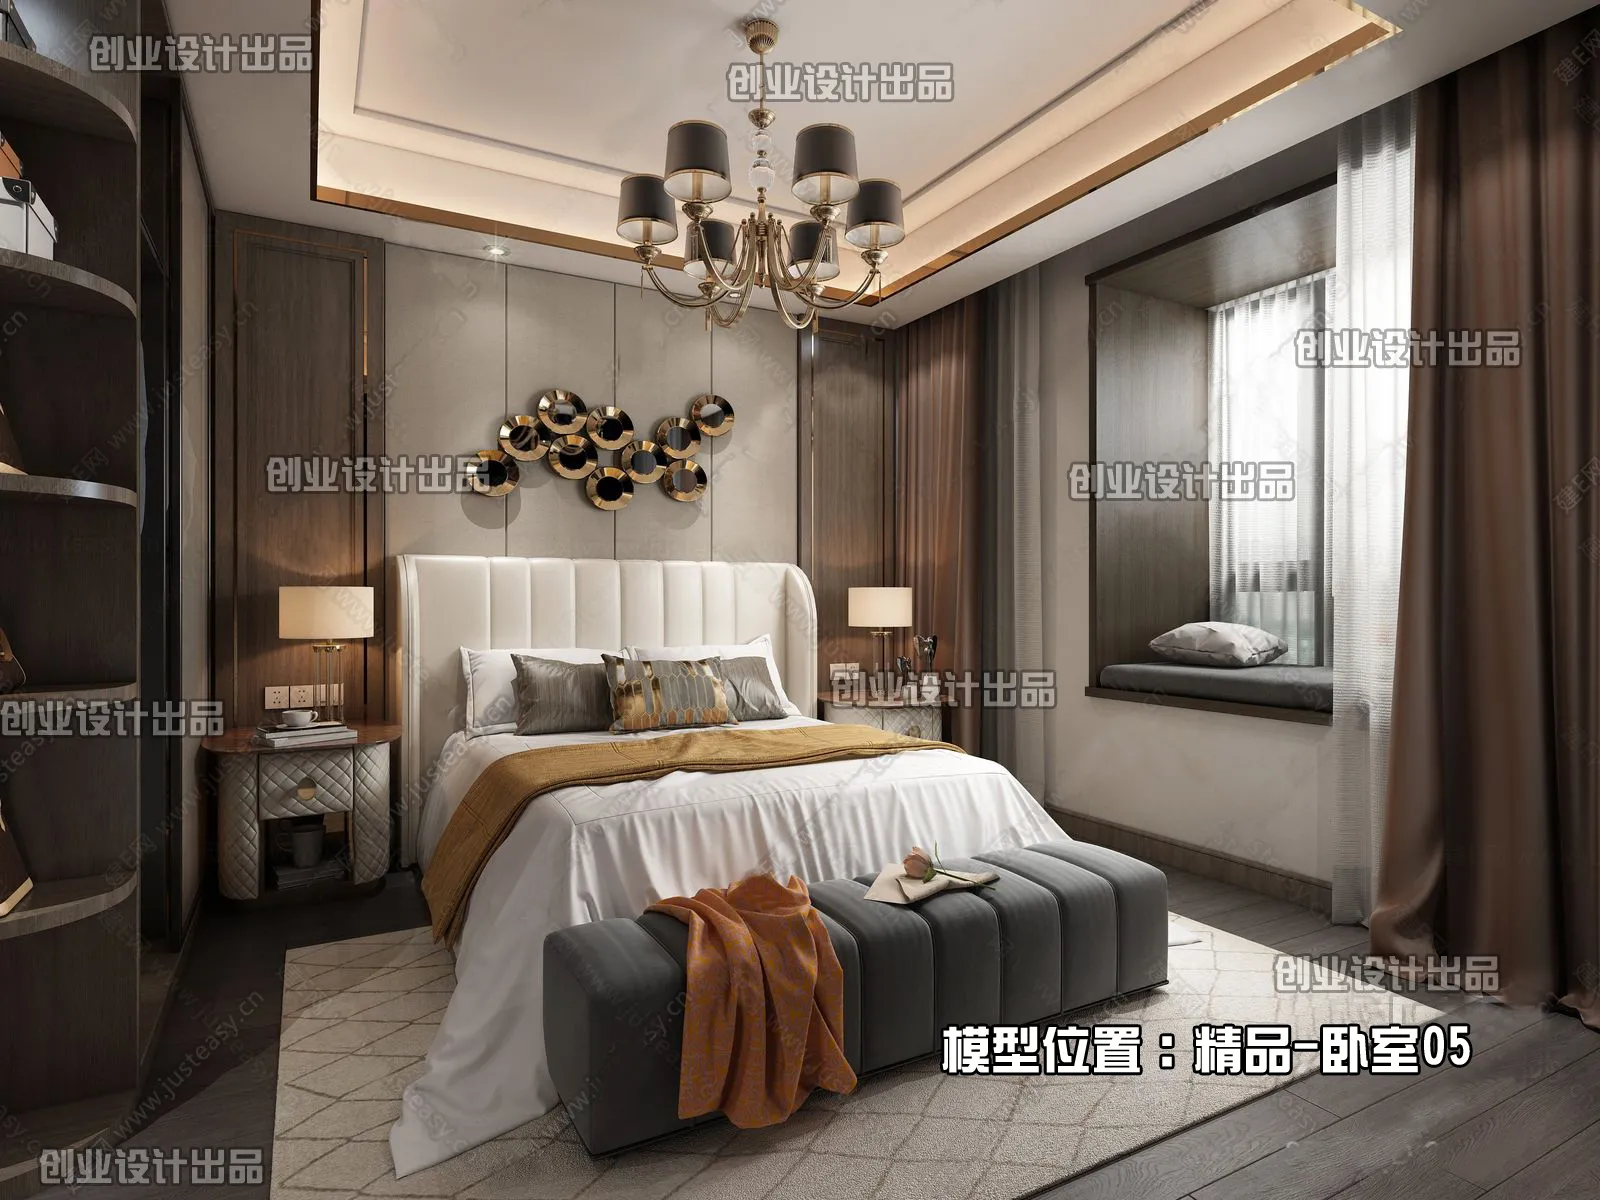 Bedroom – Modern Interior Design – 3D Models – 151